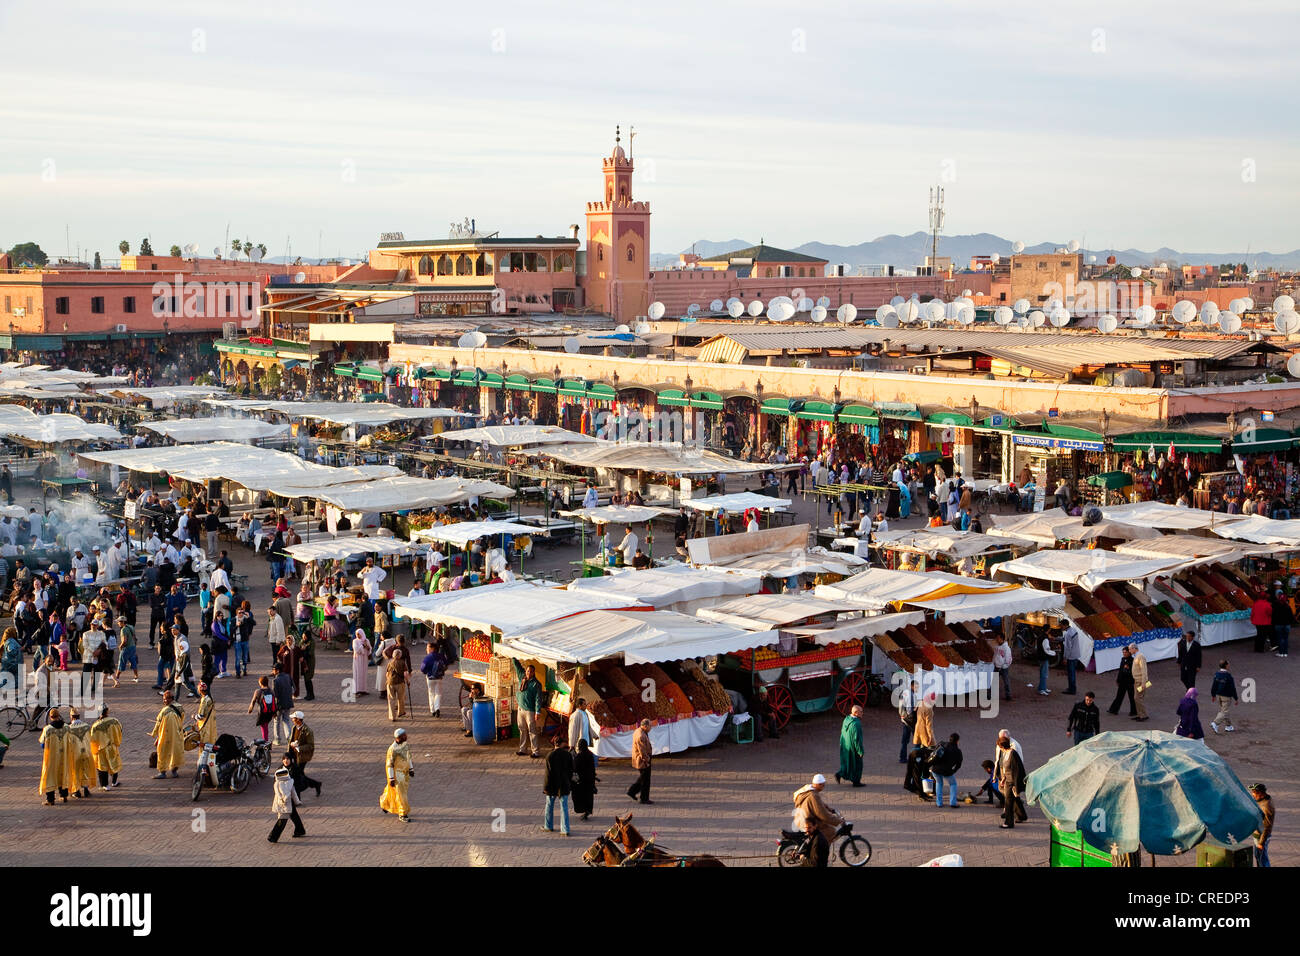 La nourriture et les étals de marché en place Djemaa El Fna, la médina, vieille ville, site du patrimoine mondial de l'UNESCO, Marrakech, Maroc, Afrique Banque D'Images